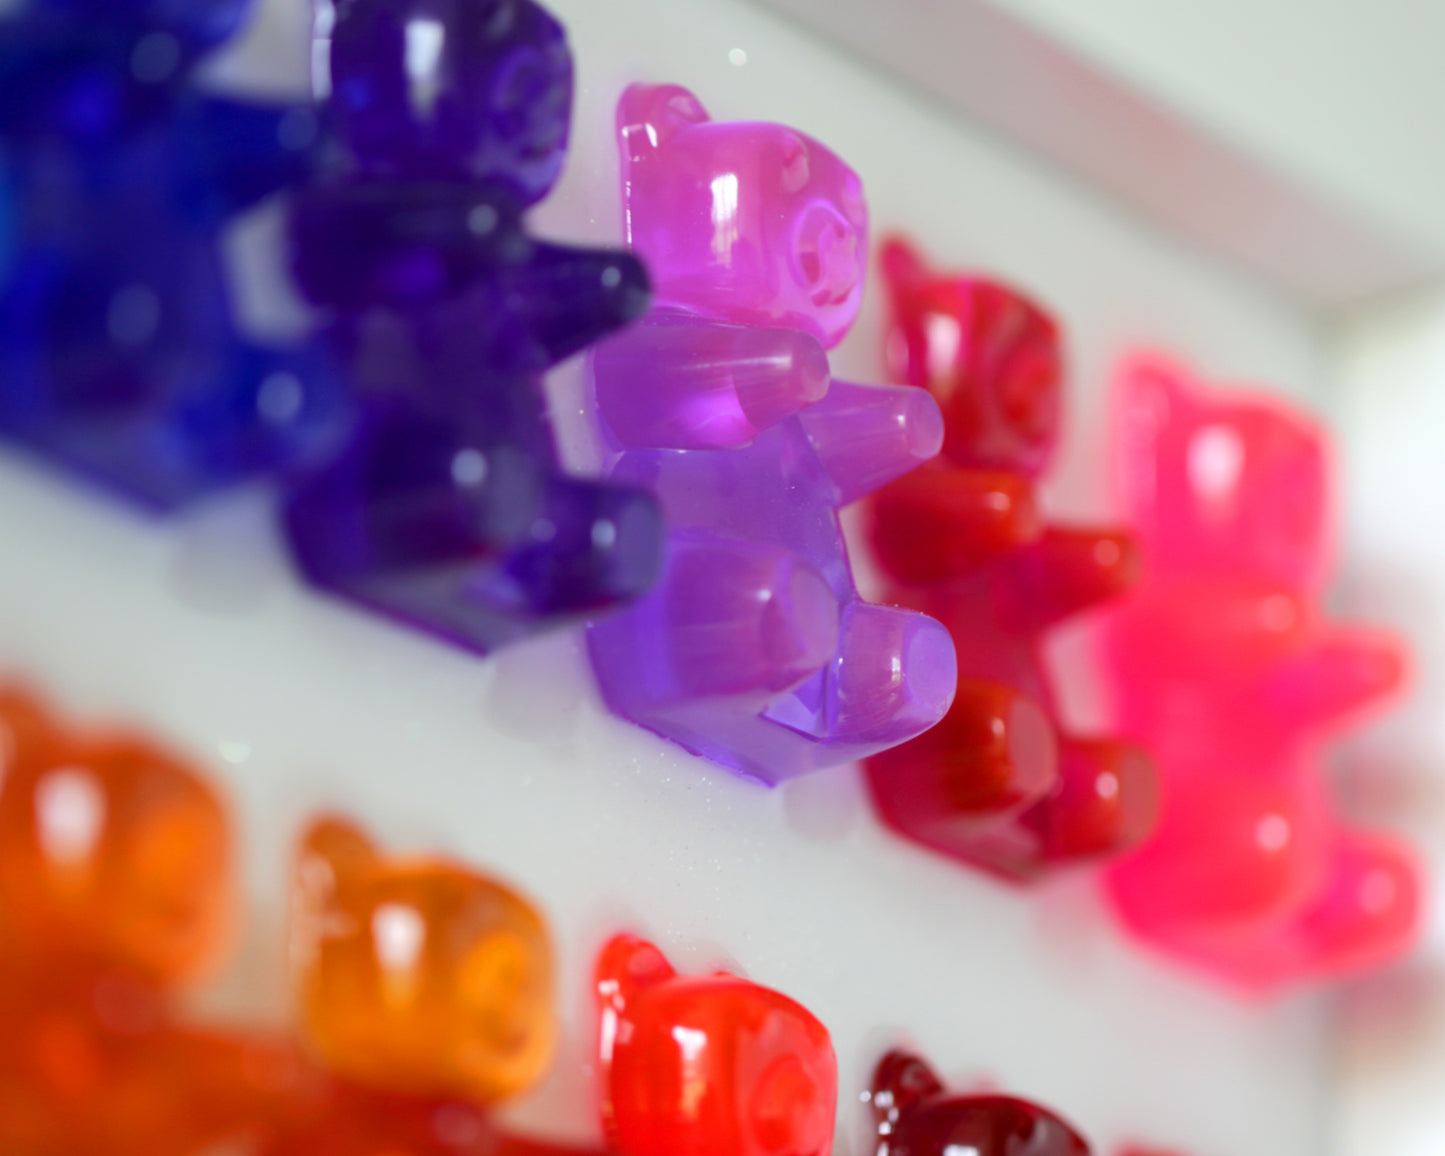 14 Gummy Bears Resin Art